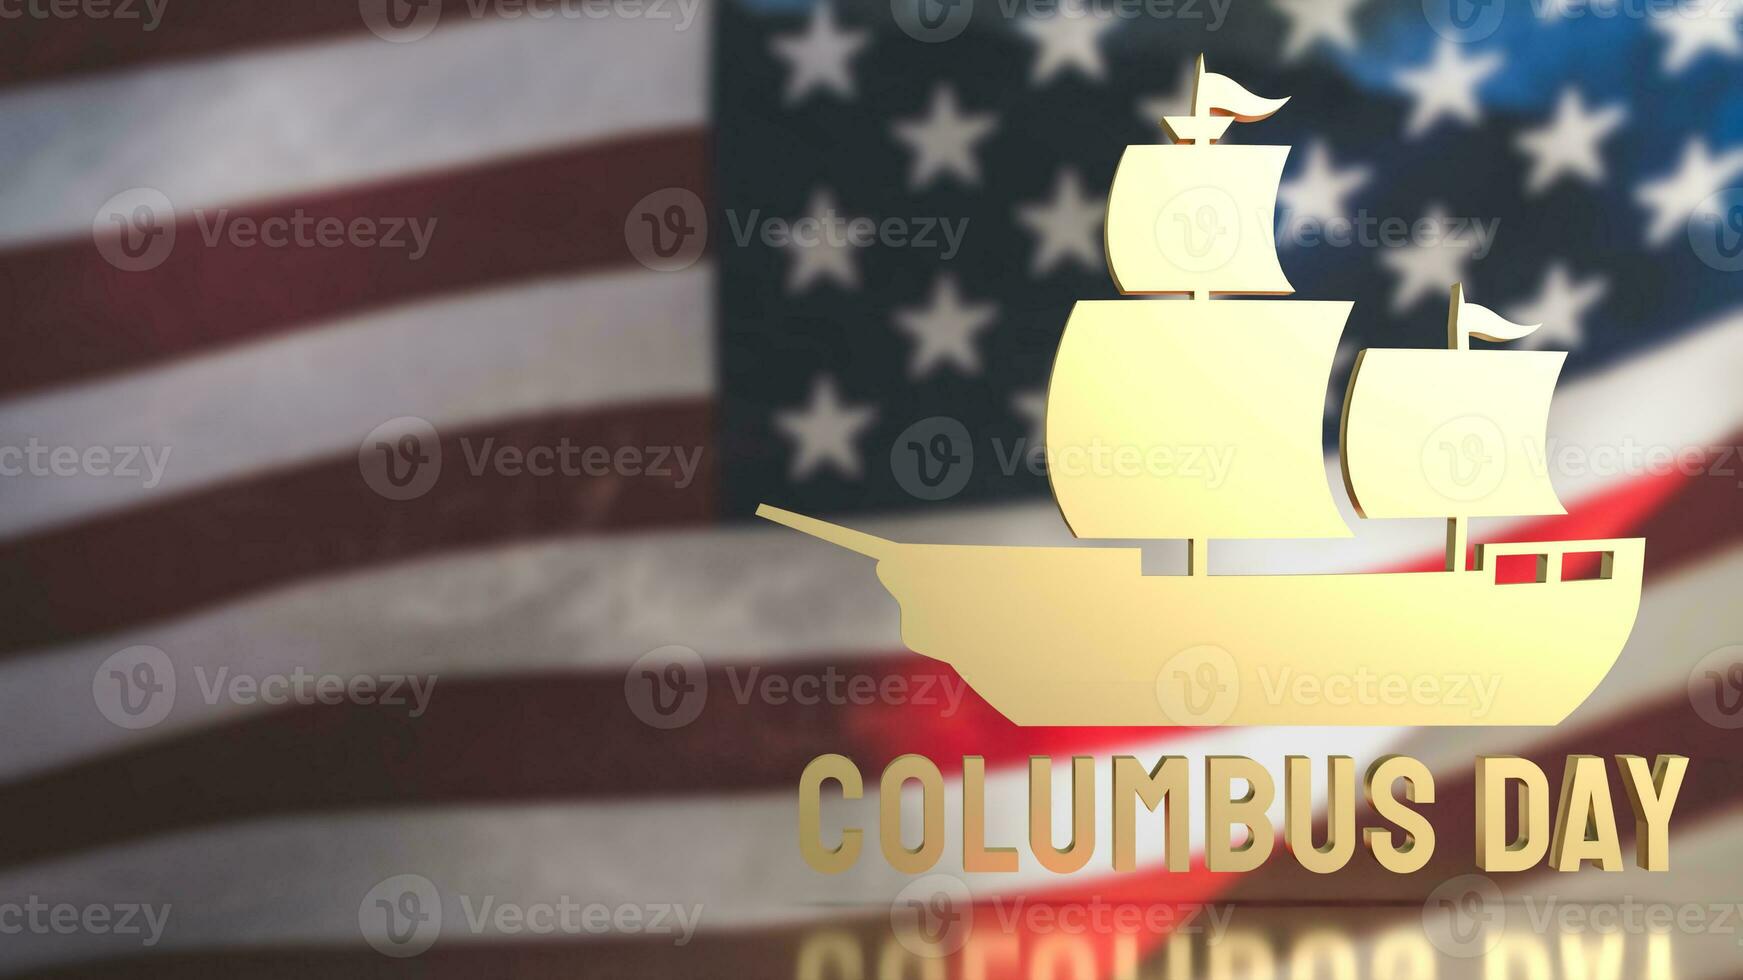 a ouro barco a vela em EUA bandeira fundo para Colombo dia conceito 3d Renderização foto